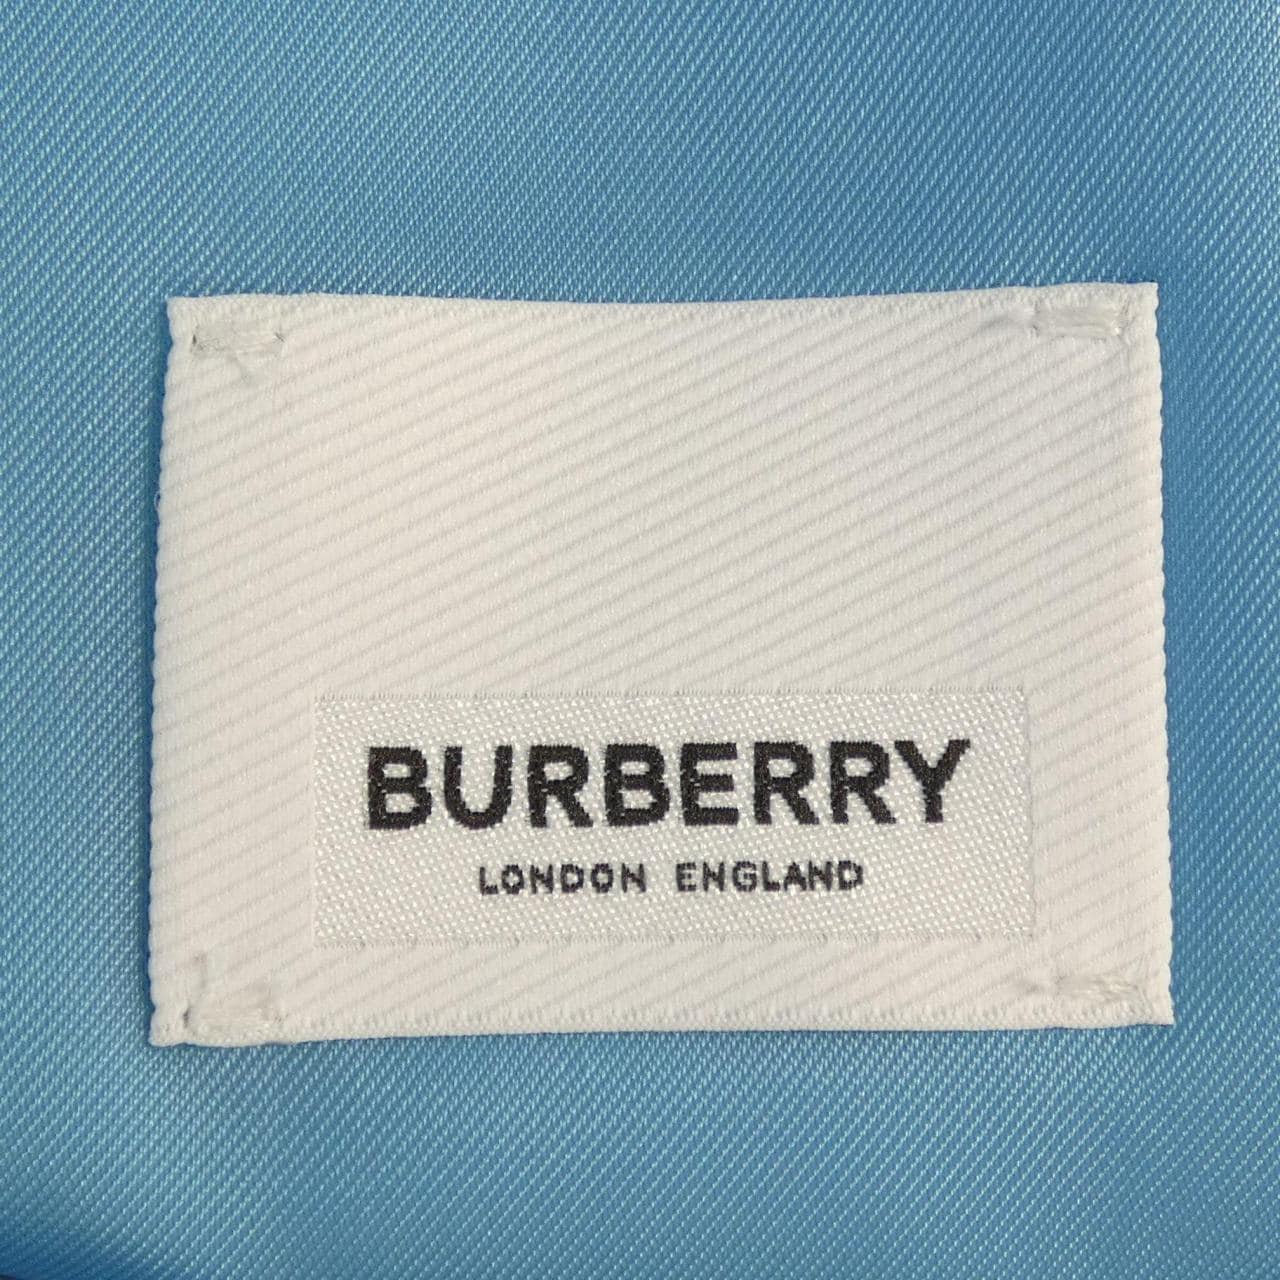 BURBERRY jacket